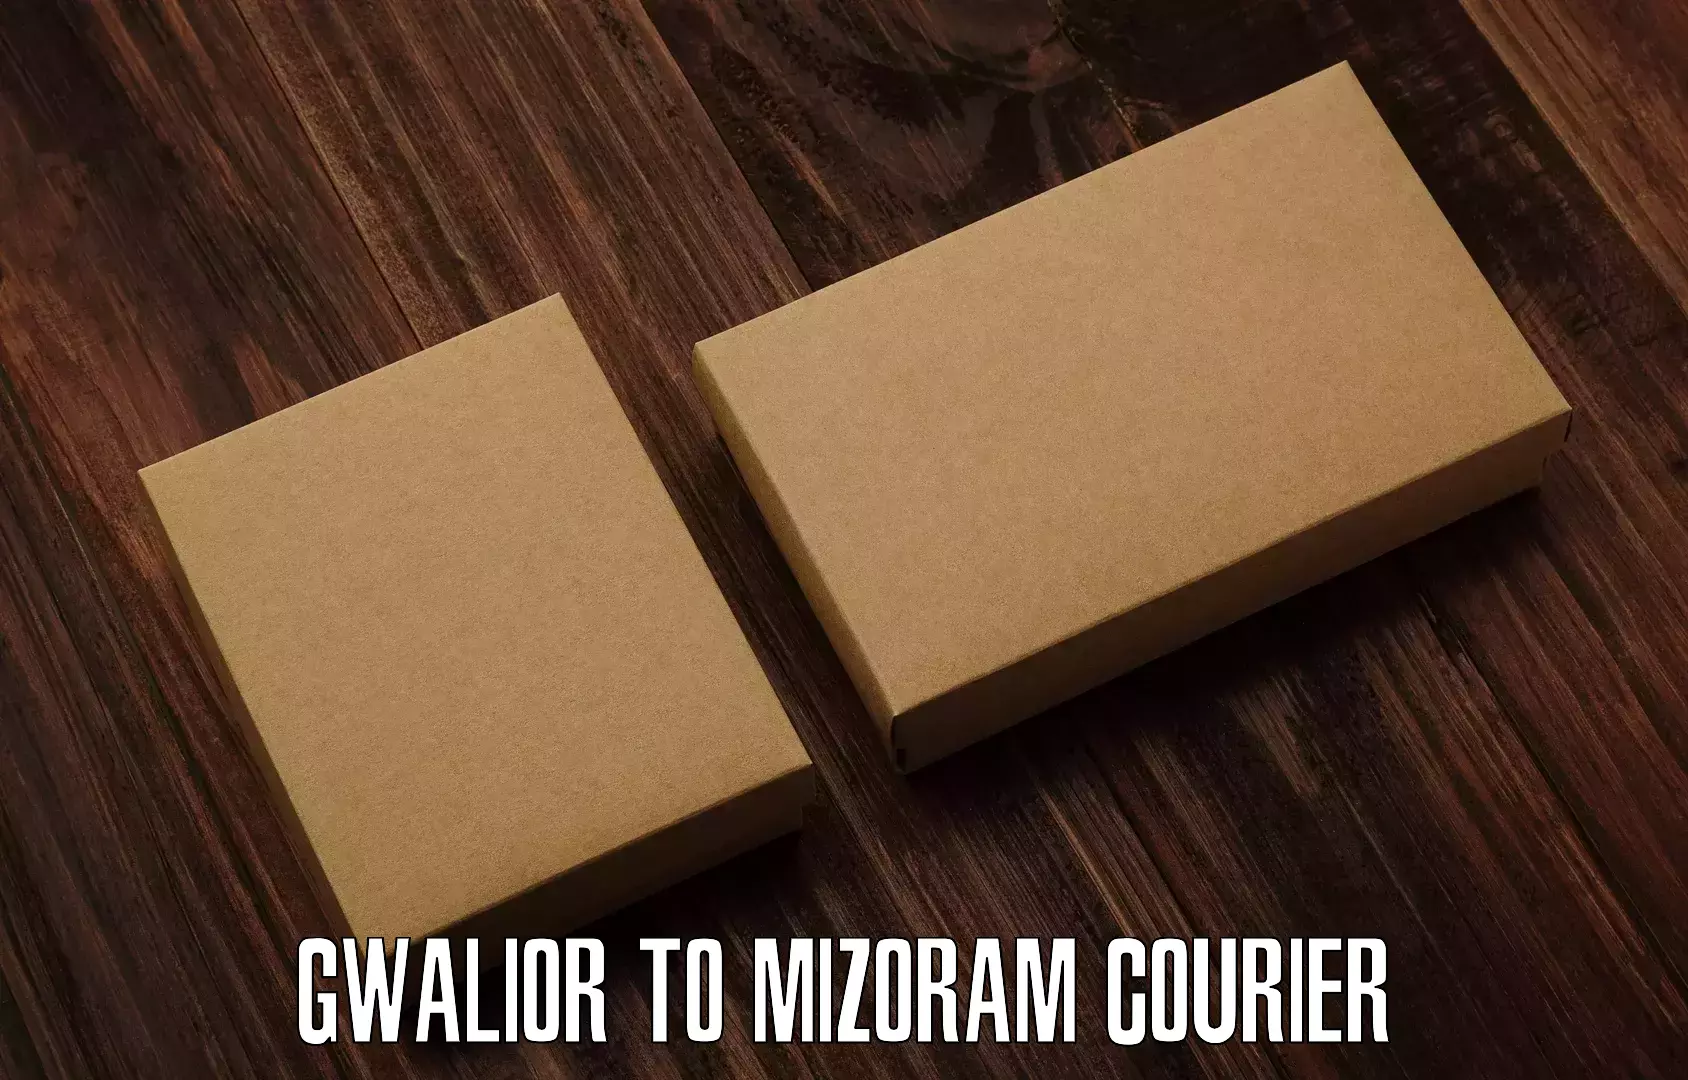 Efficient parcel service Gwalior to Champhai